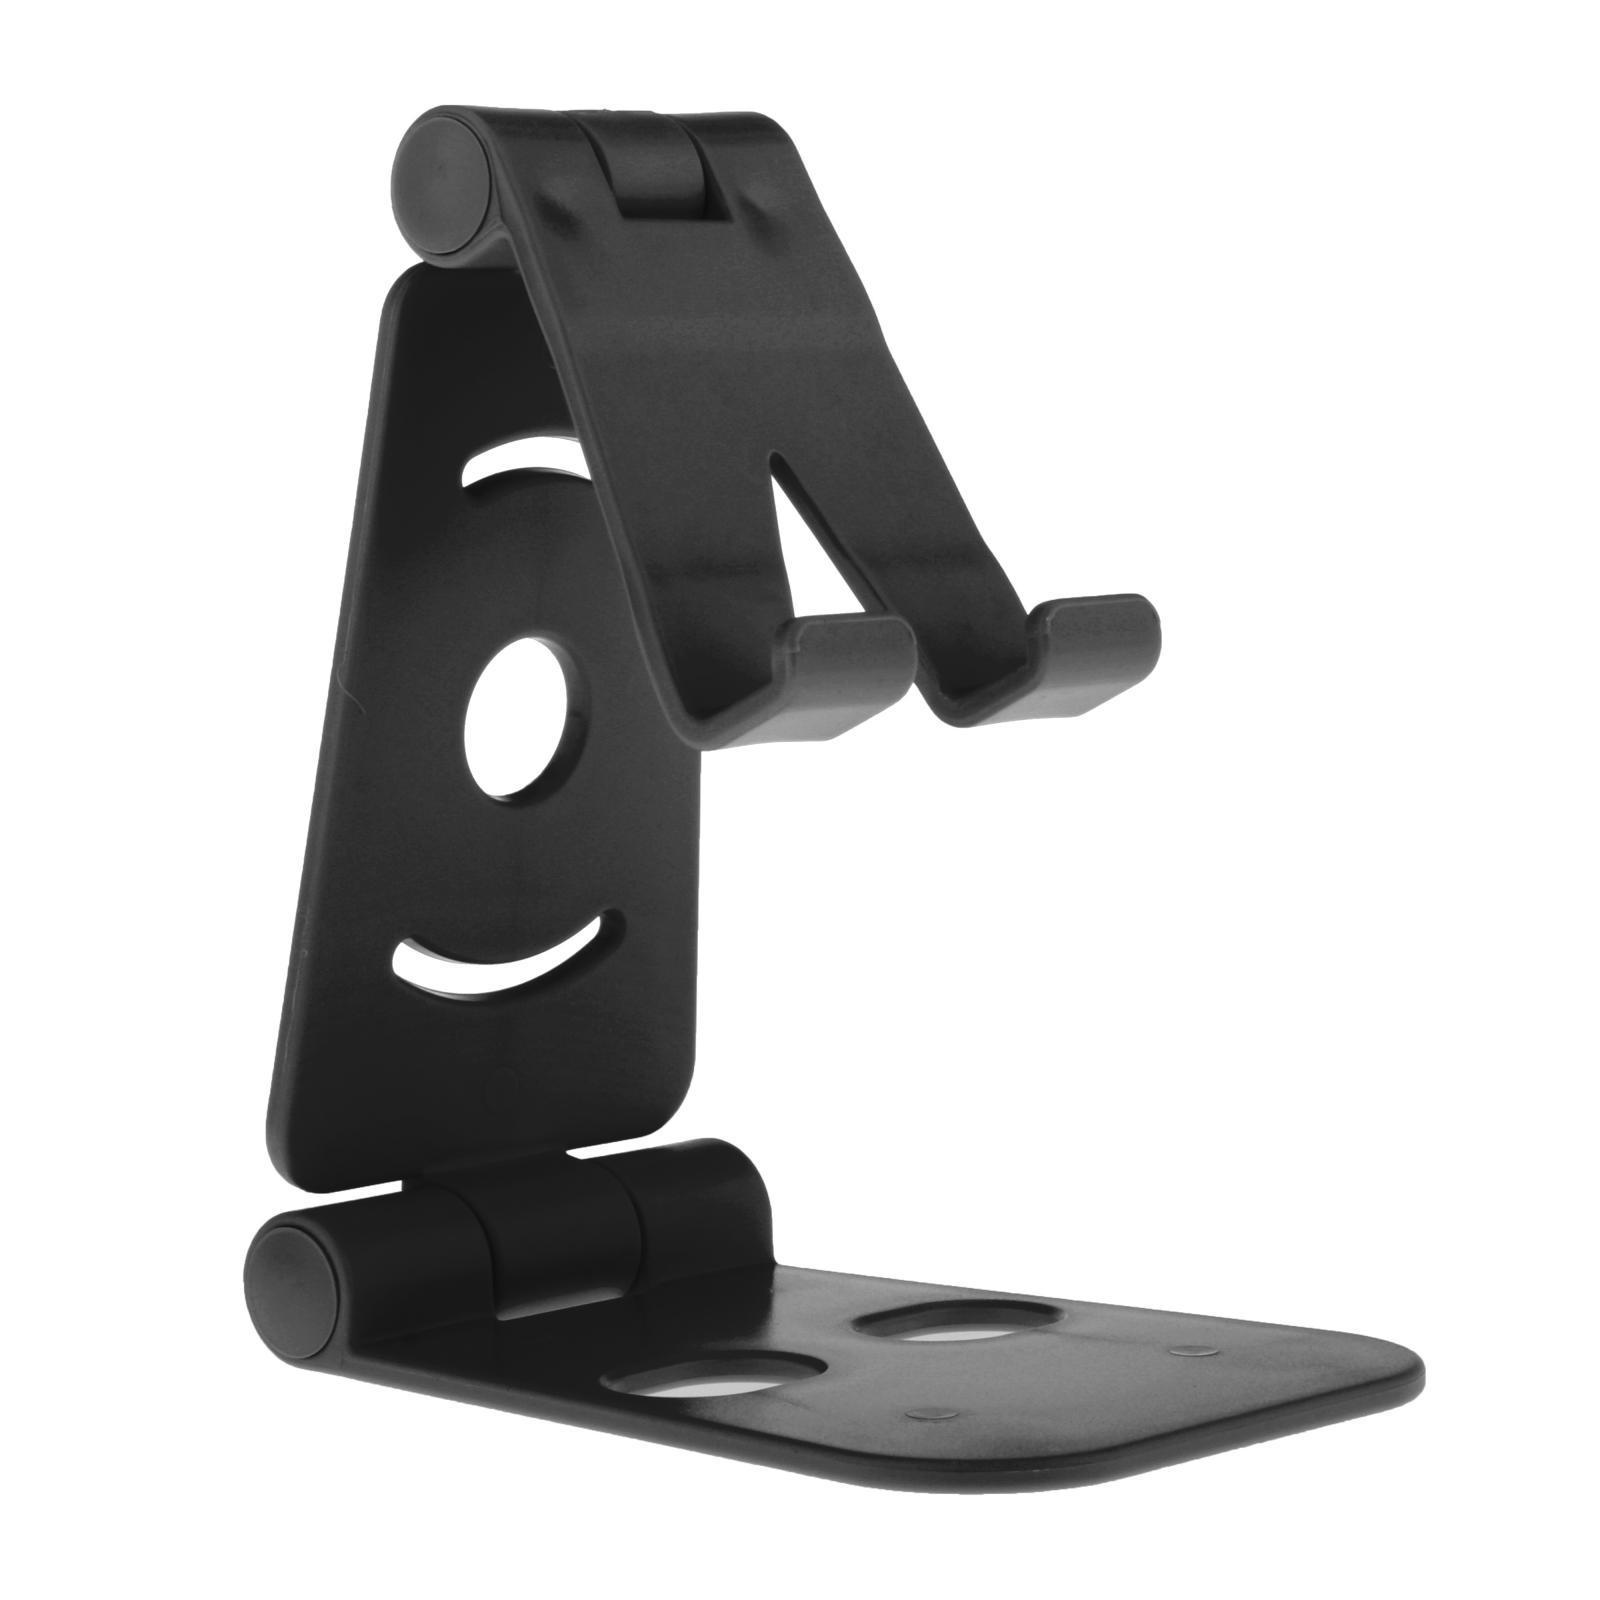 Universal Cell Phone Tablet Desktop Stand Desk Holder Mount